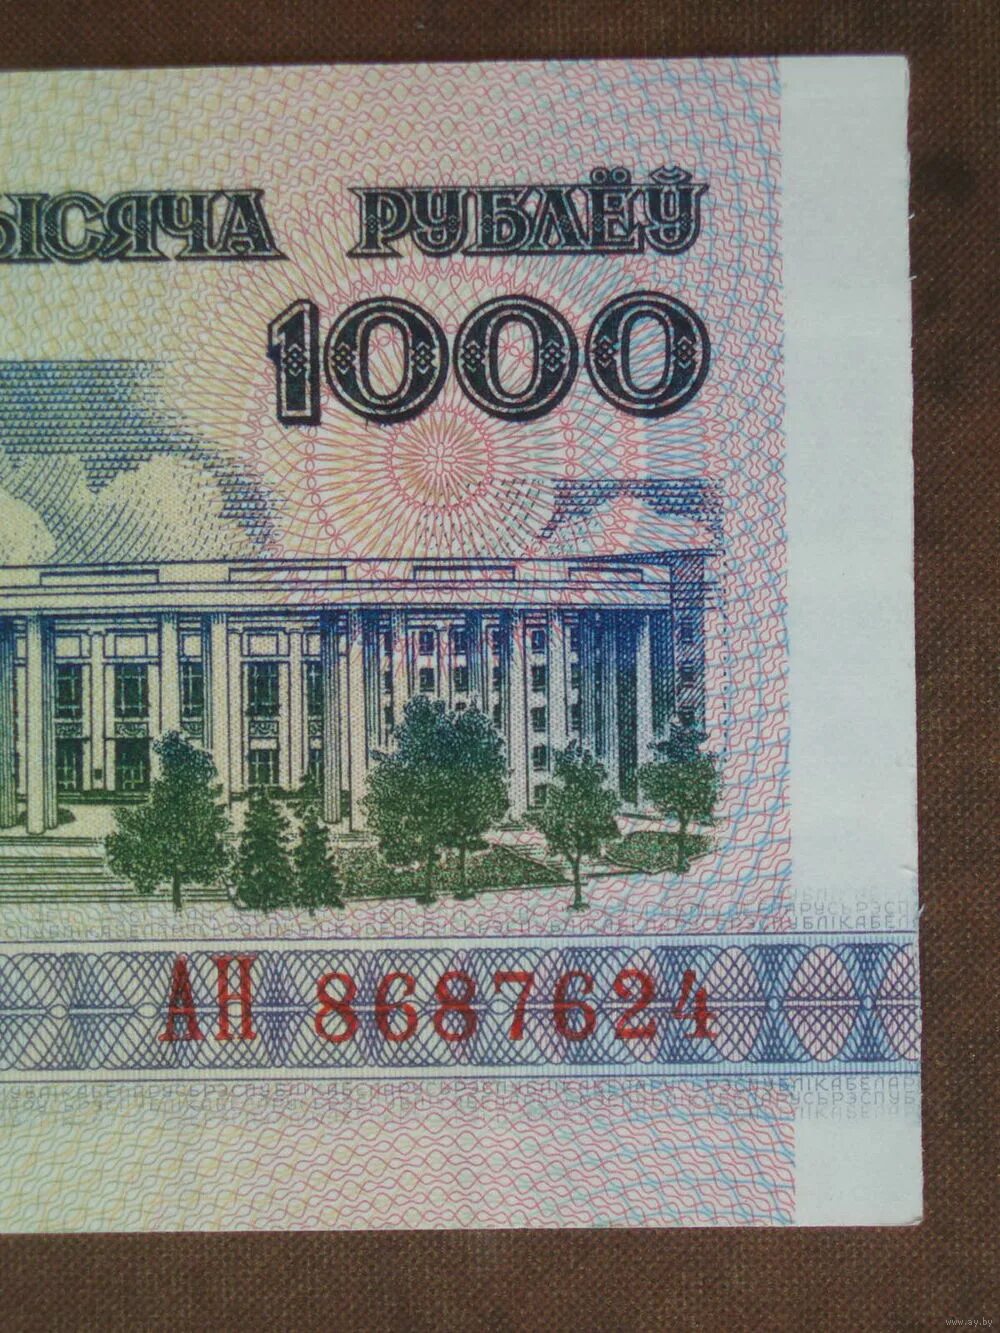 1000 рублей год. Банкнота 1000 рублей 1992 года. 1000 Рублей 1992 года. Купюра 1000 рублей 1992. 1000 Тысяча рублей 1992 года.